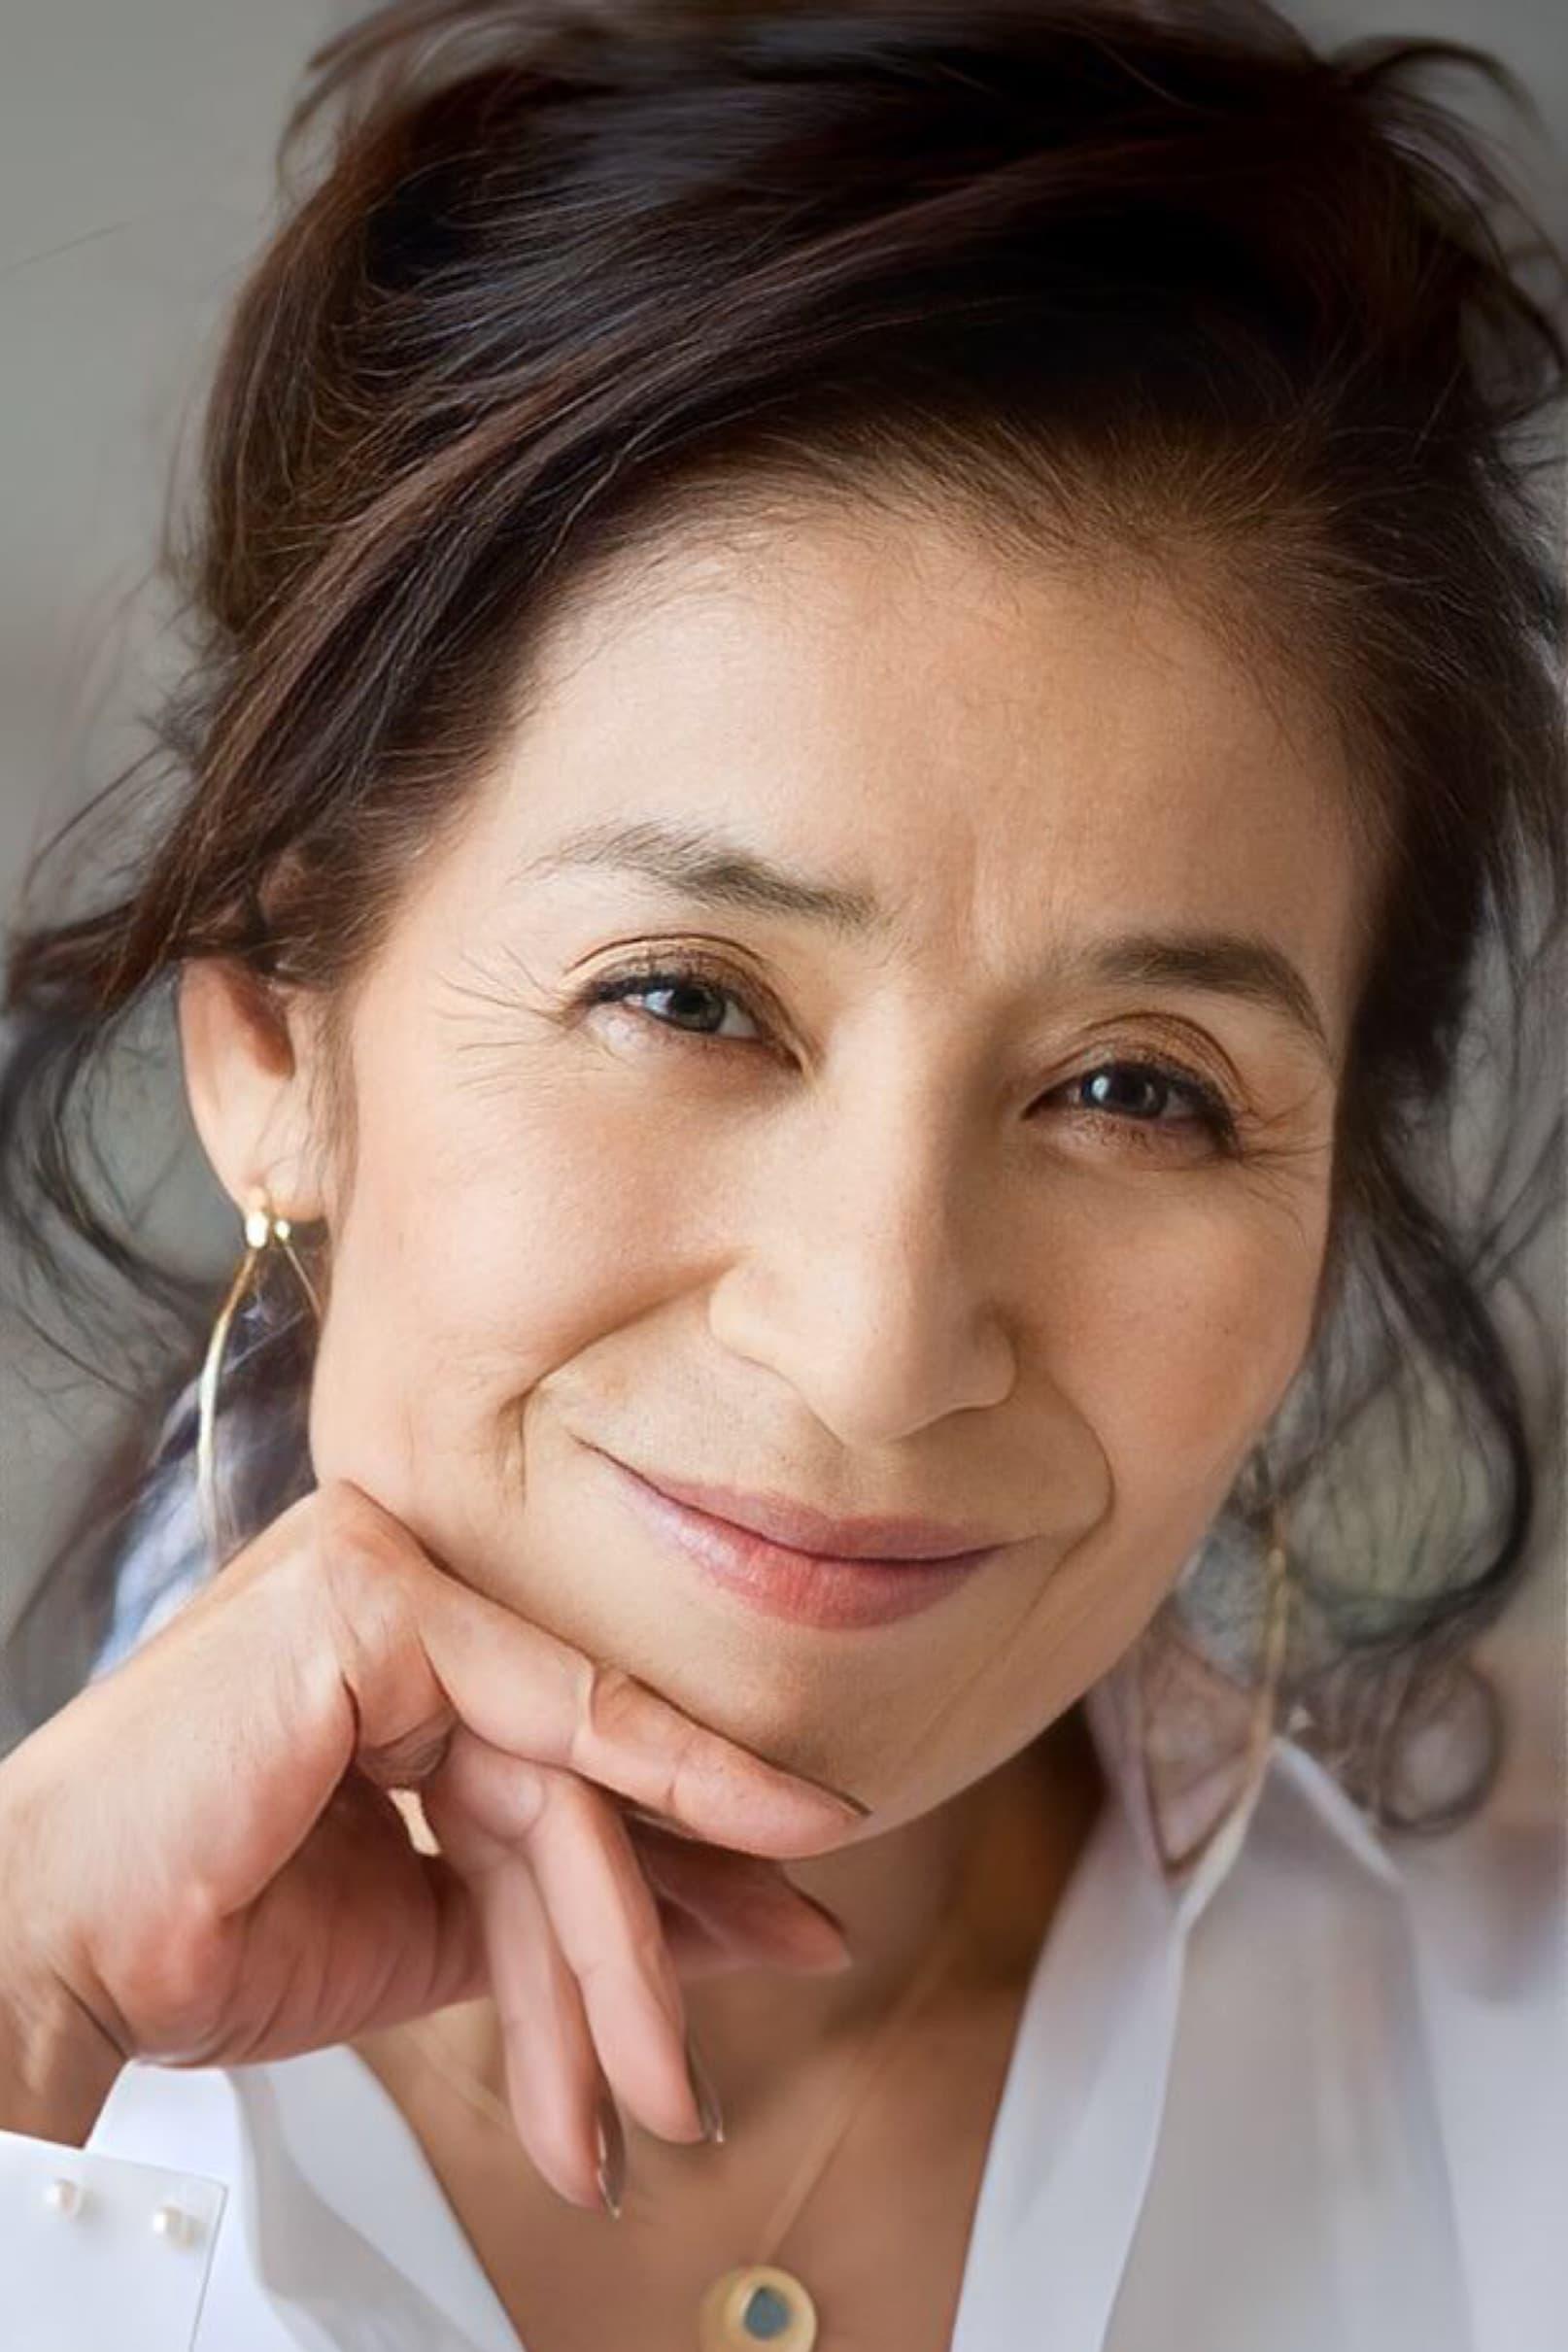 Mitsuko Baisho | Kayo Furuhashi (segment "Japan")